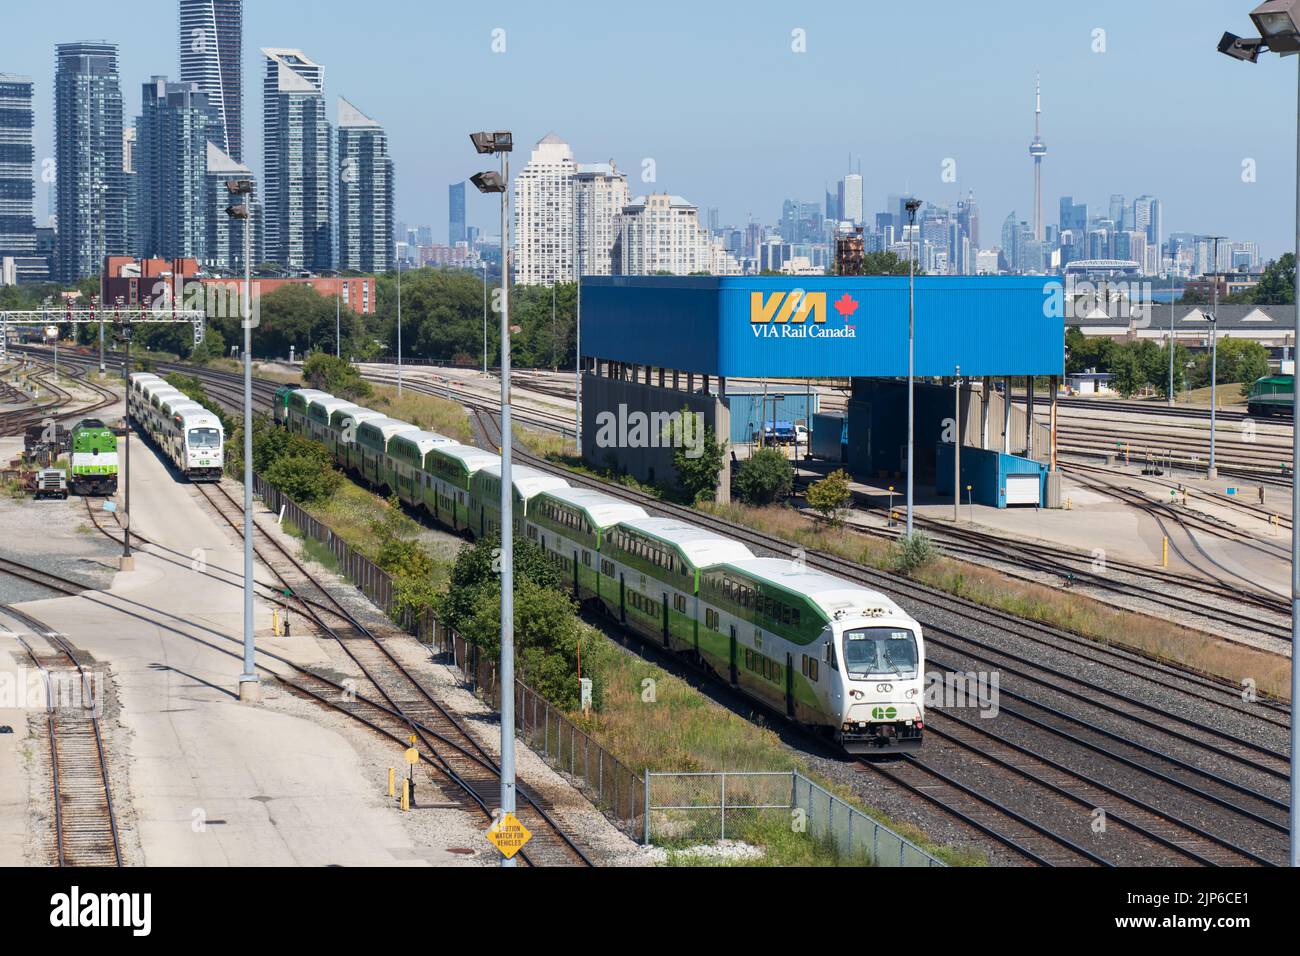 Un tren GO Transit pasa a través de una estación de tren en las afueras de Toronto, el horizonte de la ciudad se ve en el fondo. Foto de stock